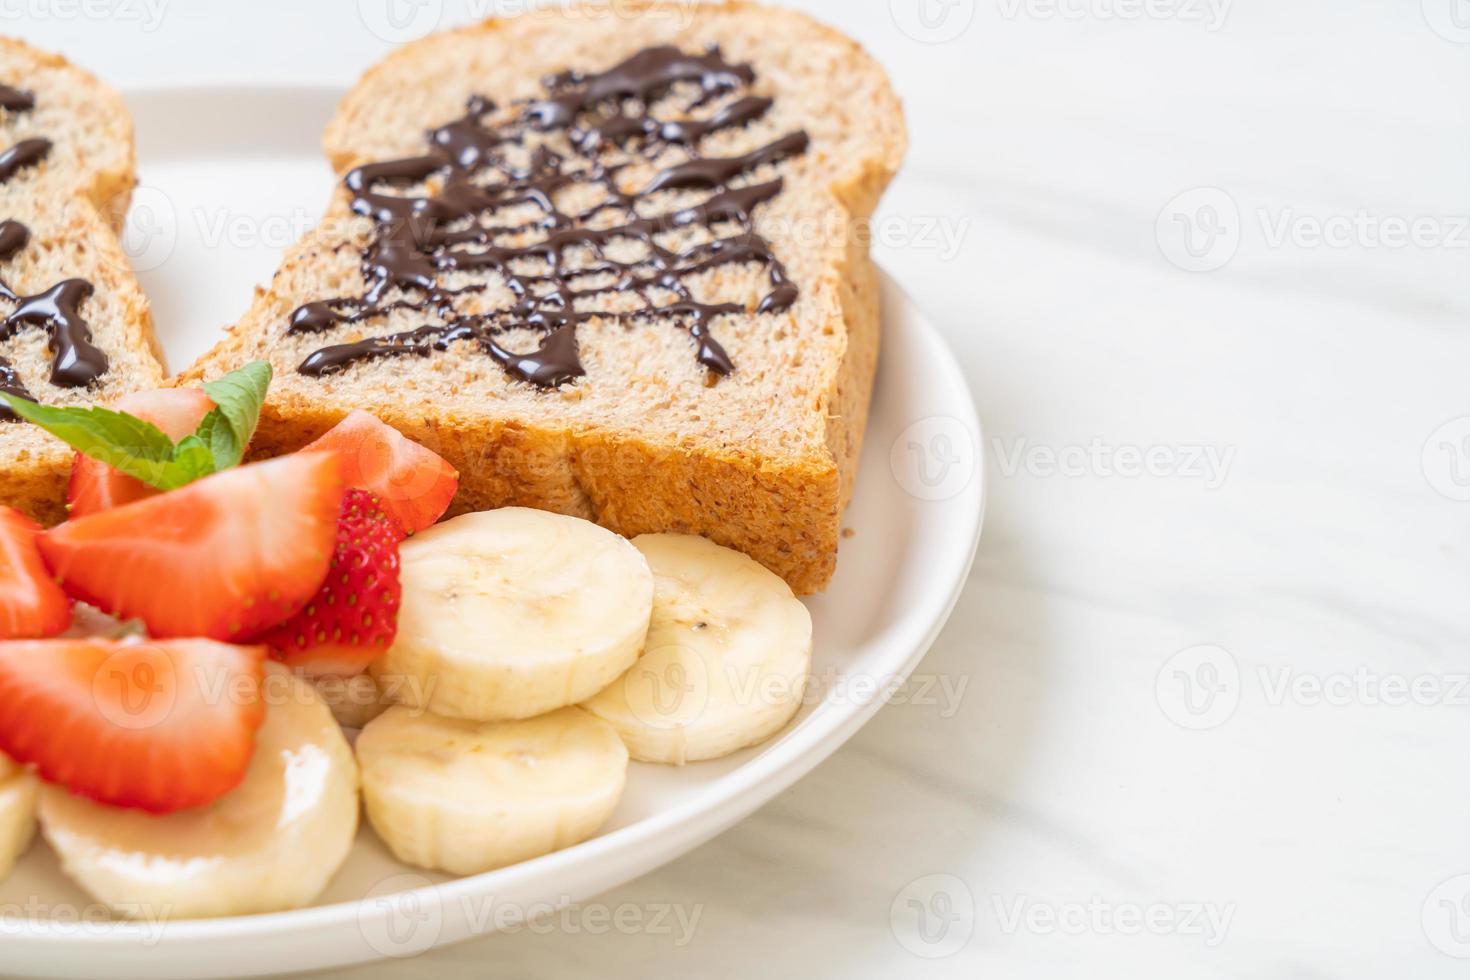 Vollkornbrot geröstet mit frischer Banane, Erdbeere und Schokolade zum Frühstück foto